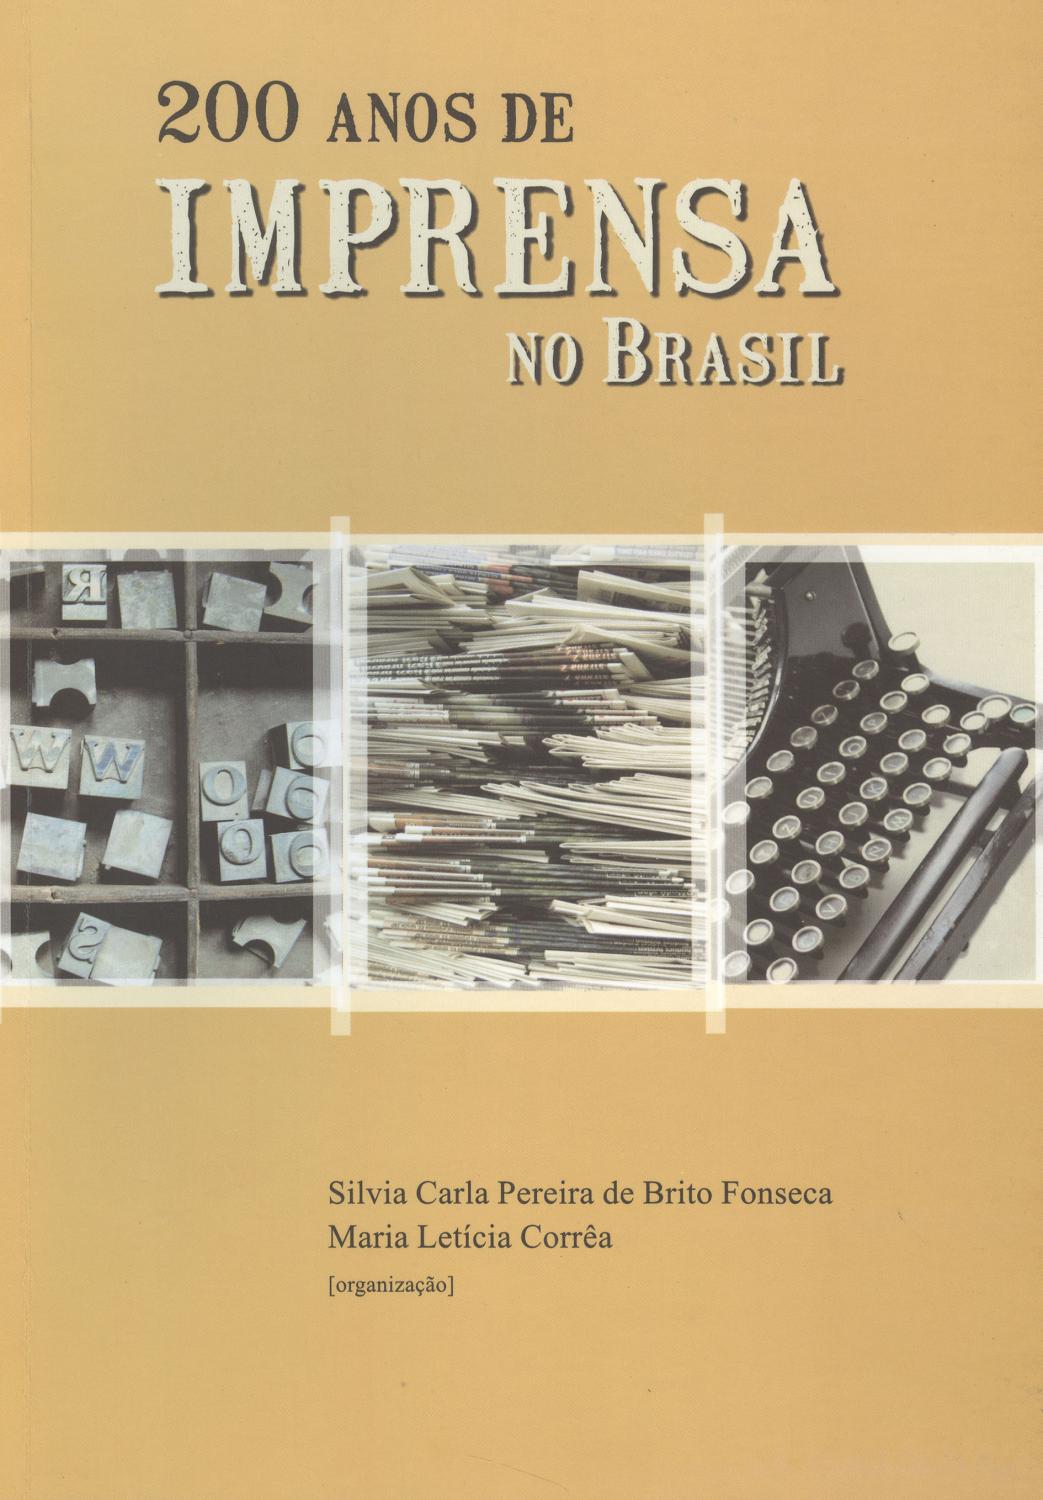 200 anos de imprensa no Brasil. - Fonseca, Silvia Carla Pereira de Brito - Corrêa, Maria Letícia -